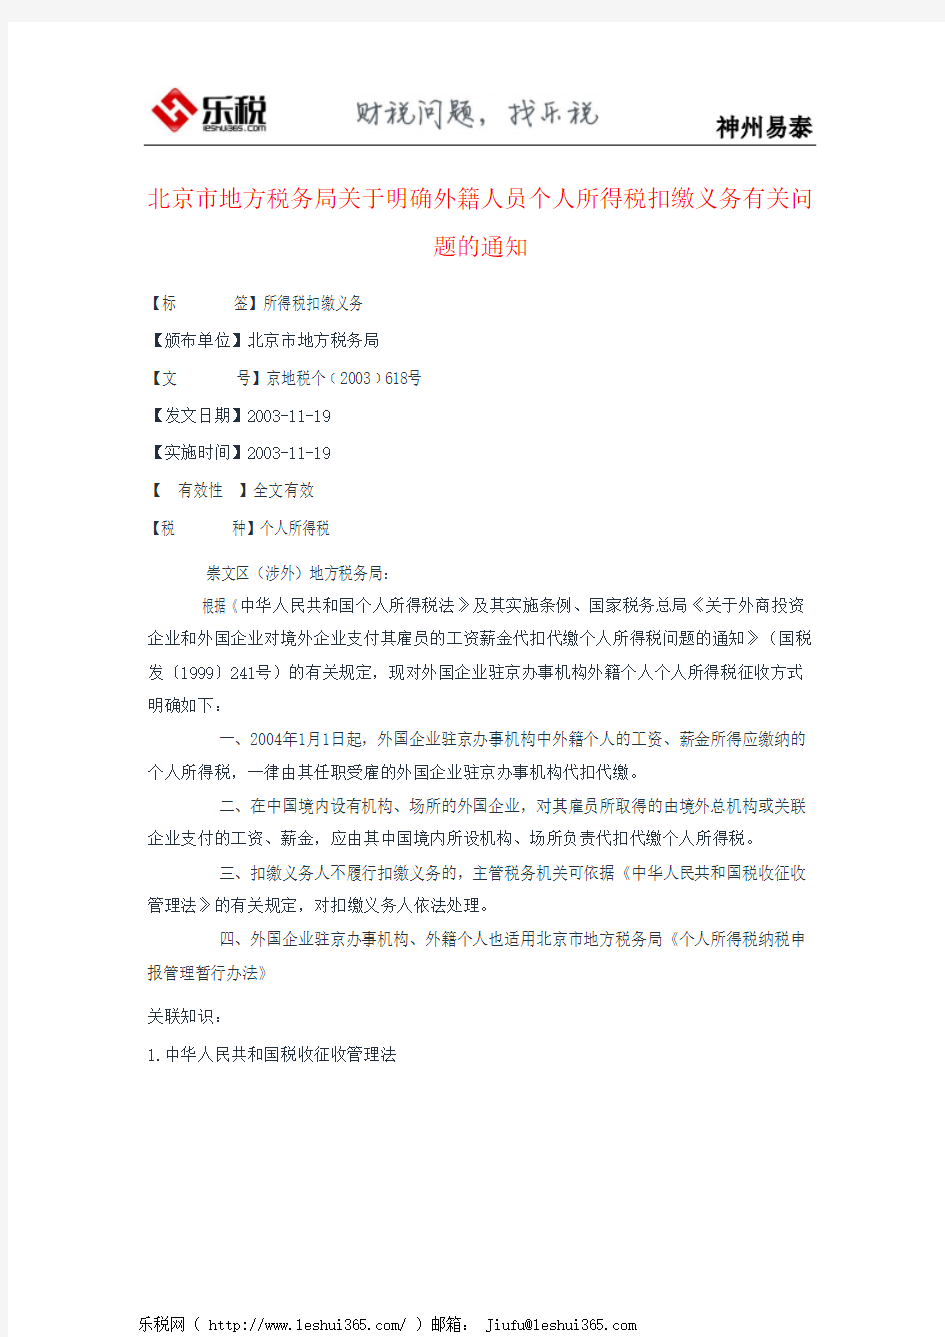 北京市地方税务局关于明确外籍人员个人所得税扣缴义务有关问题的通知